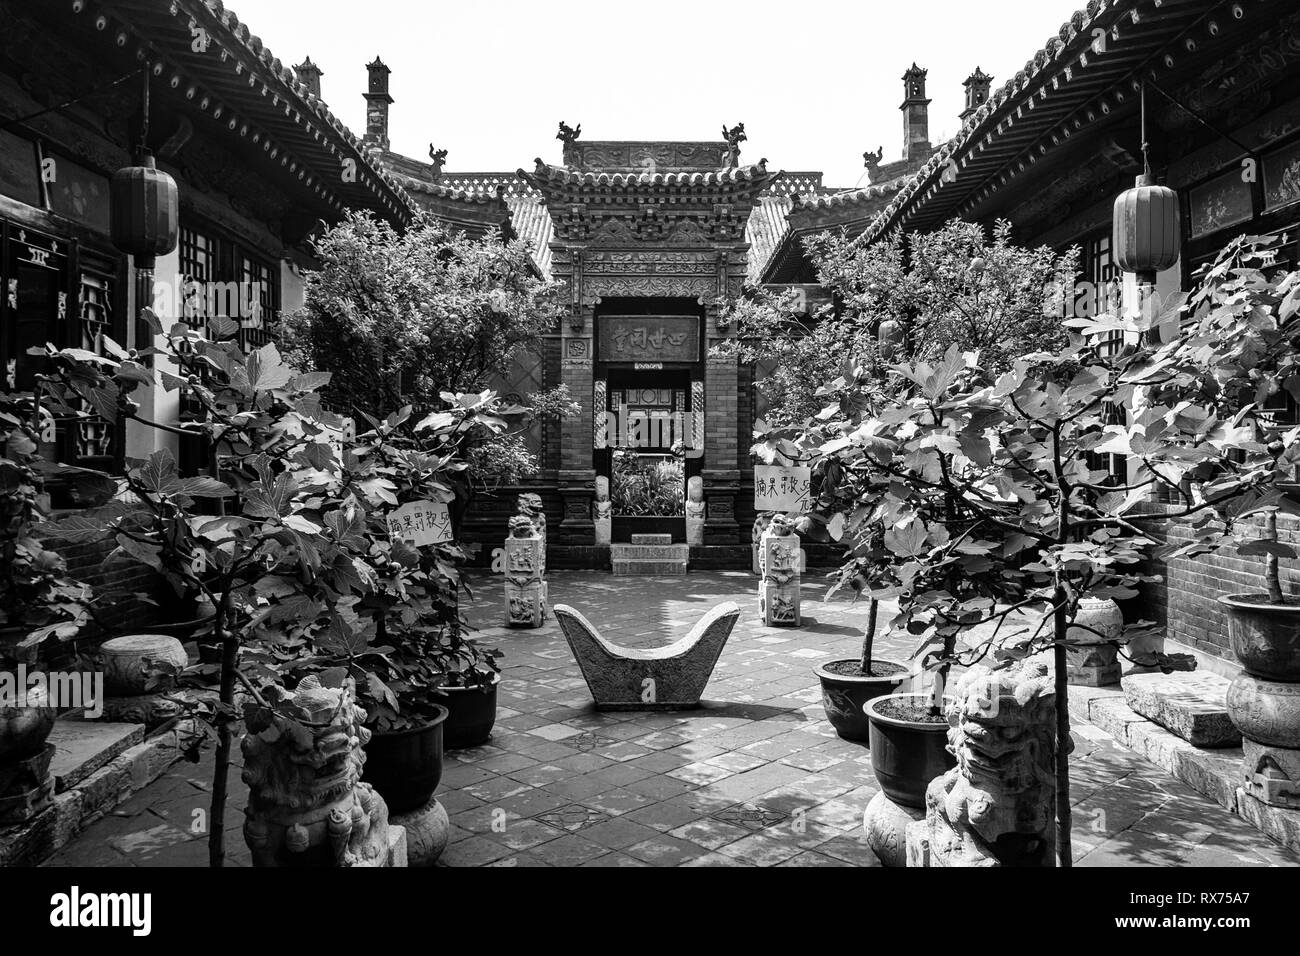 Août 2013 - Pingyao, province de Shanxi, Chine - une des cours de Ri Sheng Chang, la plus ancienne banque du monde à Pingyao Ancient City. Pingyao est Banque D'Images